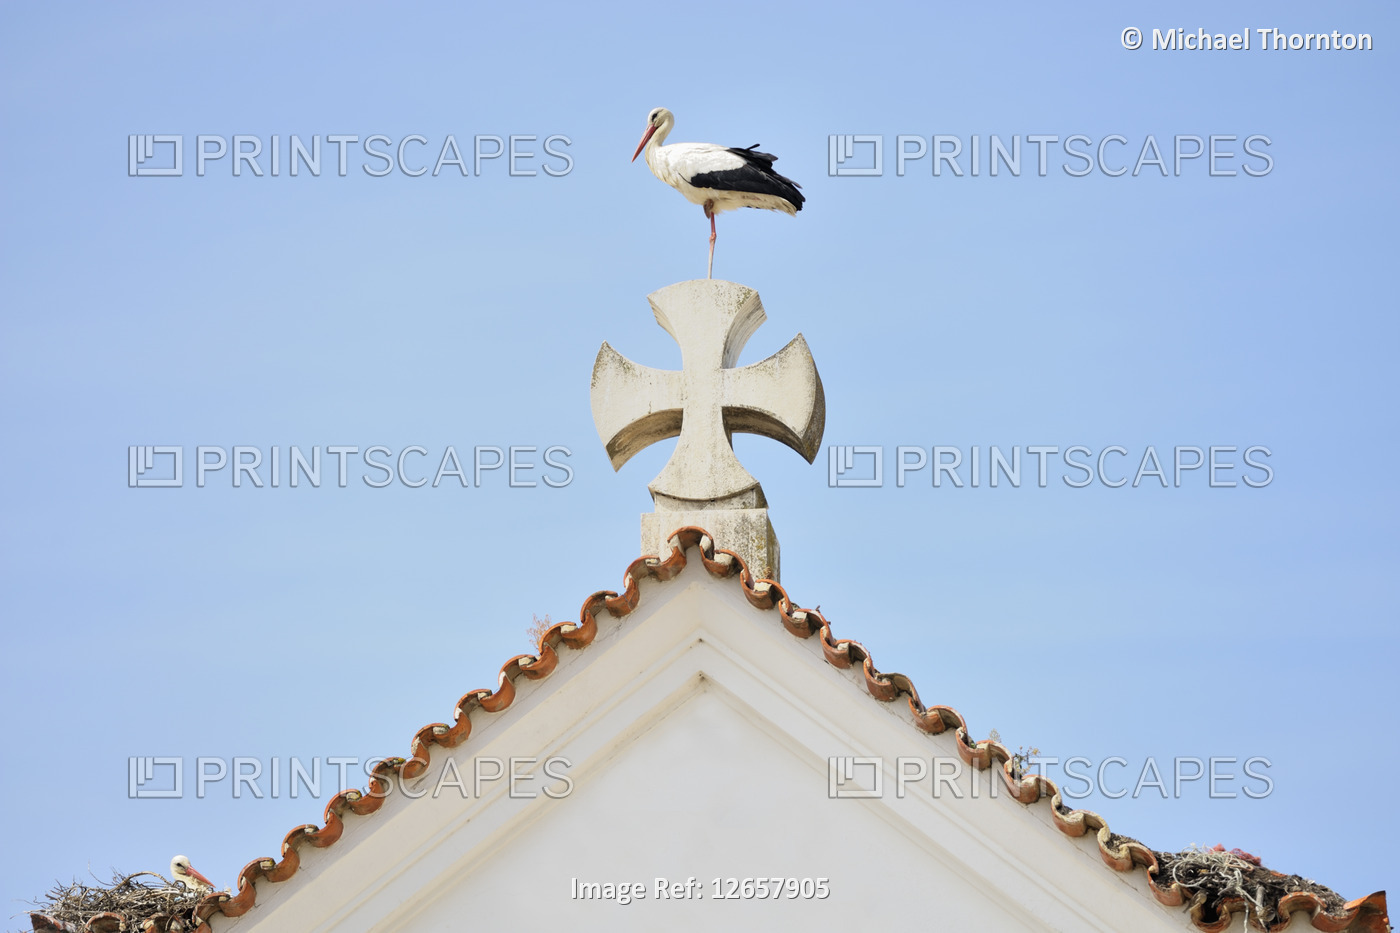 Apex of the roof of the Facade of Nossa Senhora dos Aflitos, Olháo, Faro, ...